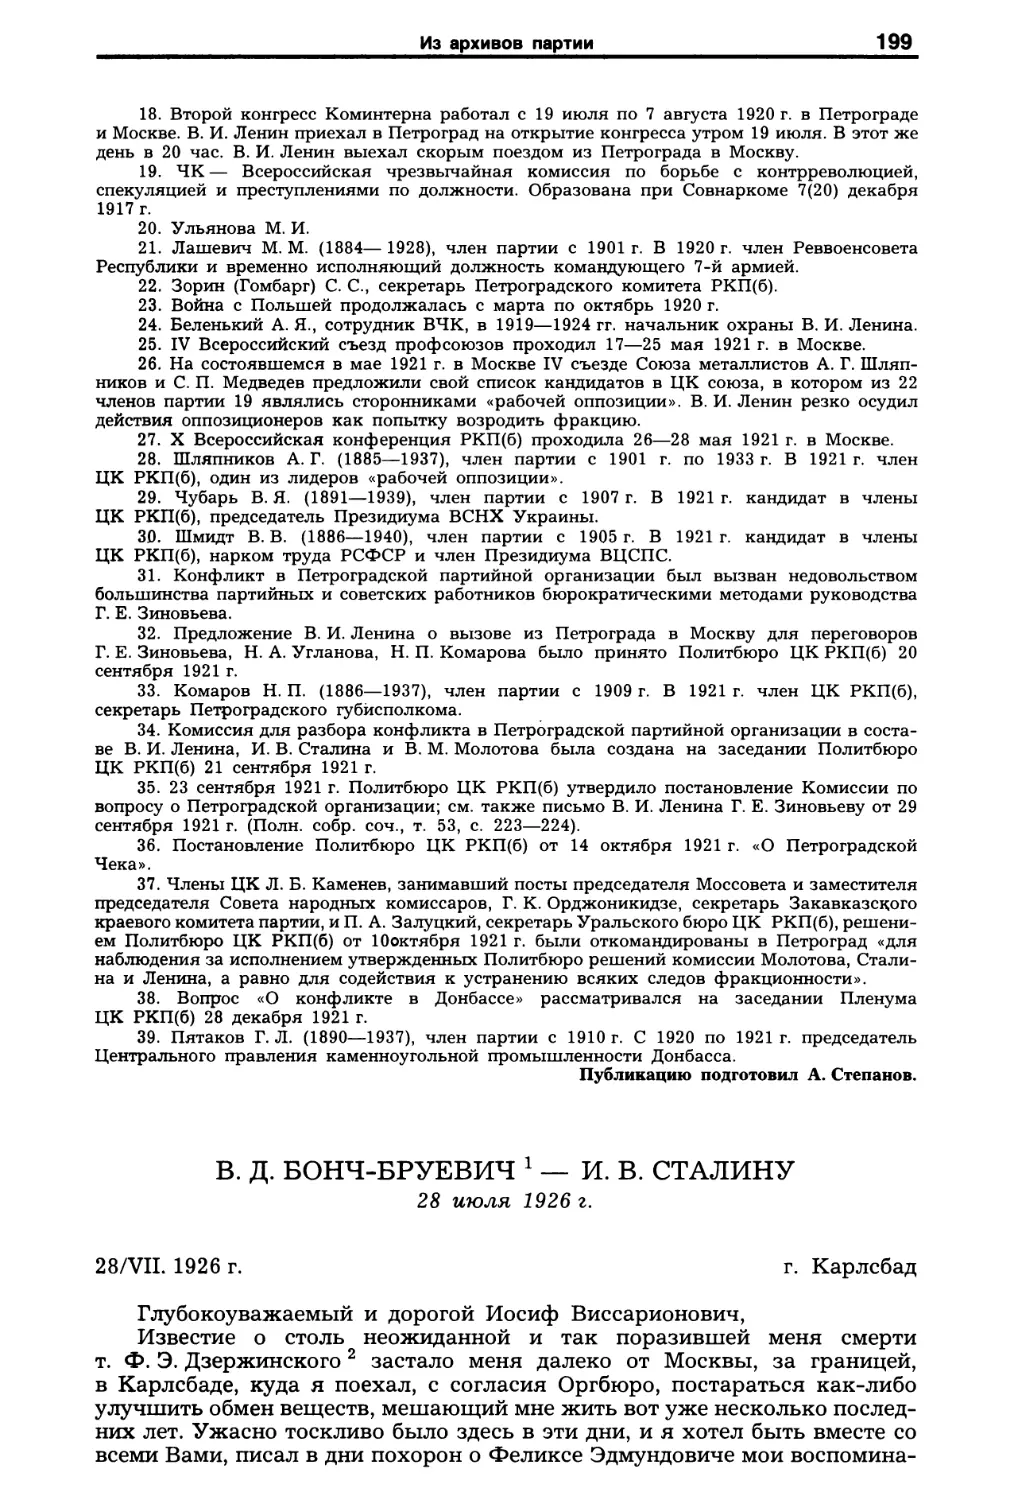 B.Д. Бонч-Бруевич — И.В. Сталину. 28 июля 1926 г